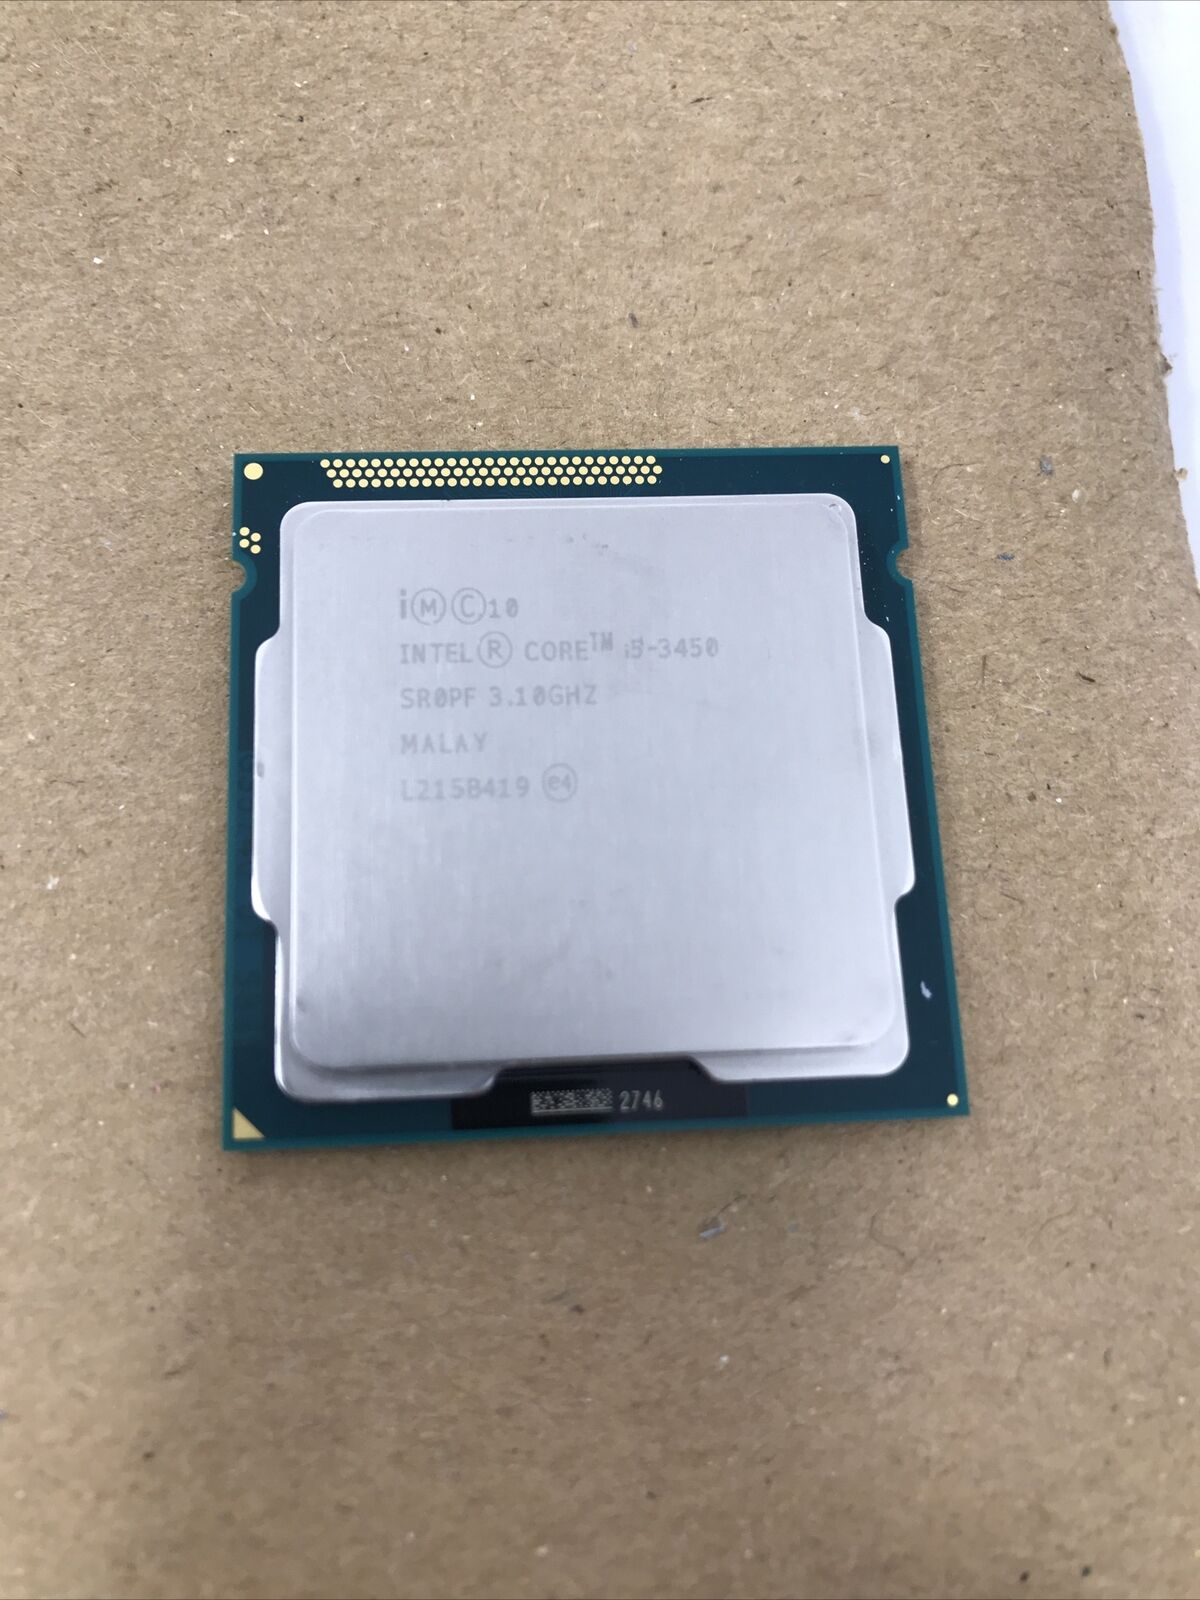 Intel Core i5-3450 3.10 GHZ Quad Core Processor